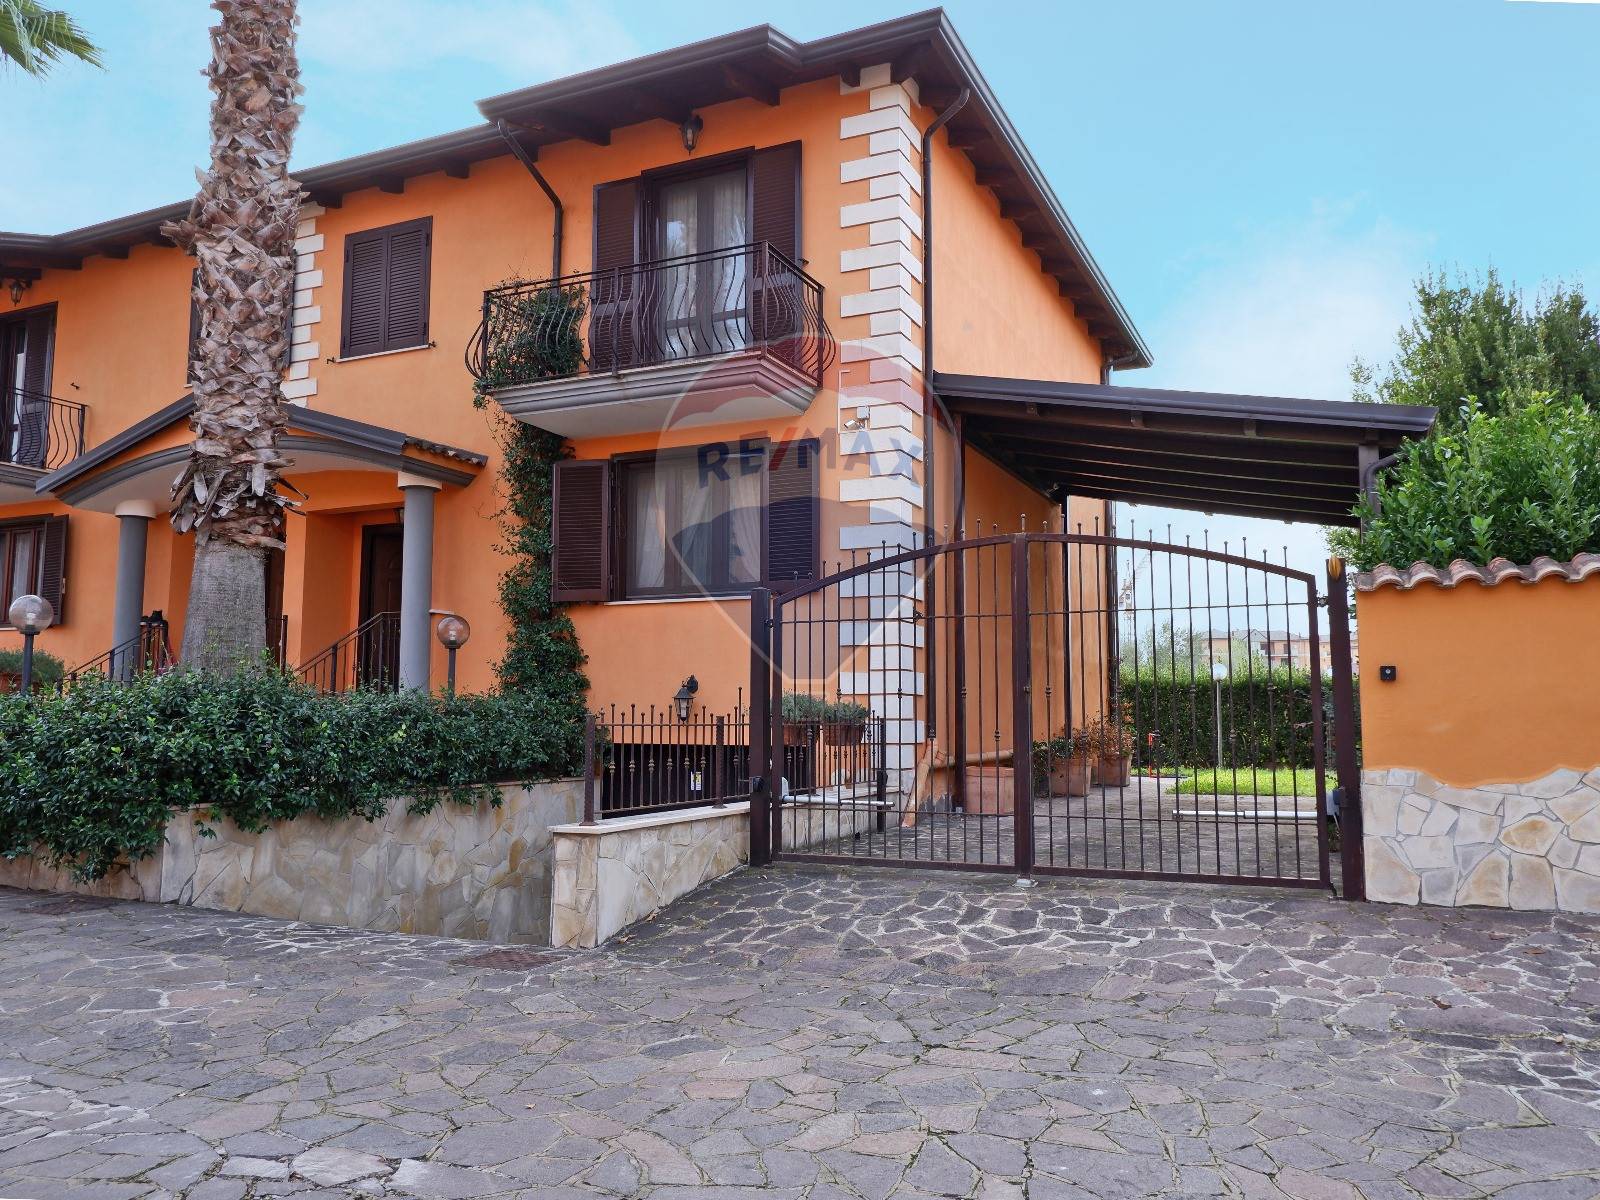 Villa a Schiera in vendita a Telese Terme, 4 locali, prezzo € 229.000 | PortaleAgenzieImmobiliari.it